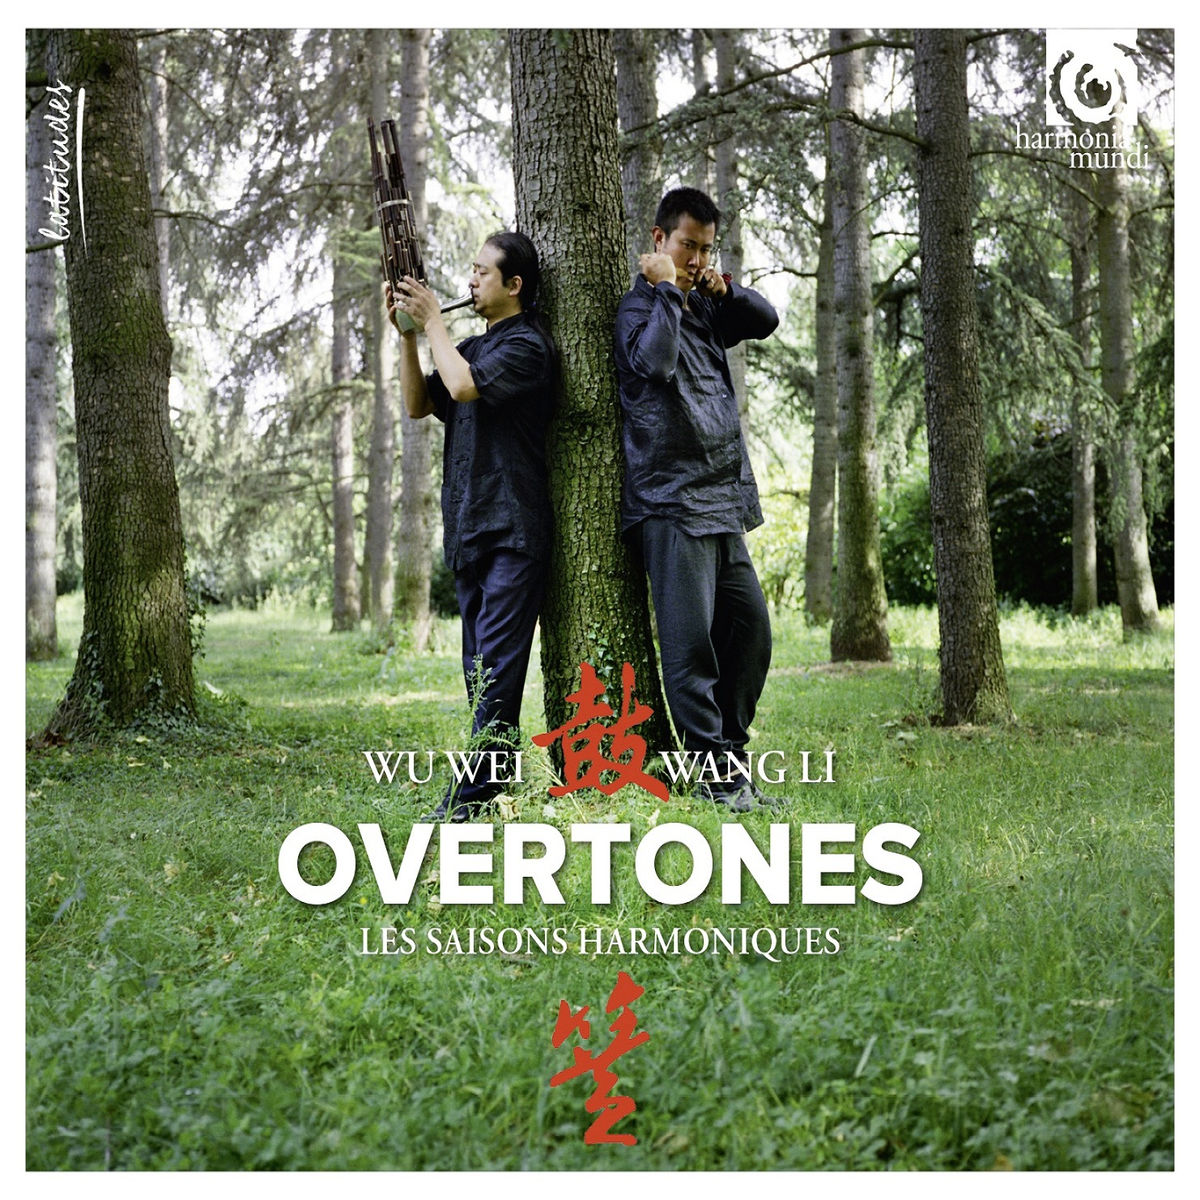 Wang Li & Wu Wei - Overtones "Les Harmoniques Du Ciel" (2016) [Qobuz FLAC 24bit/96kHz]